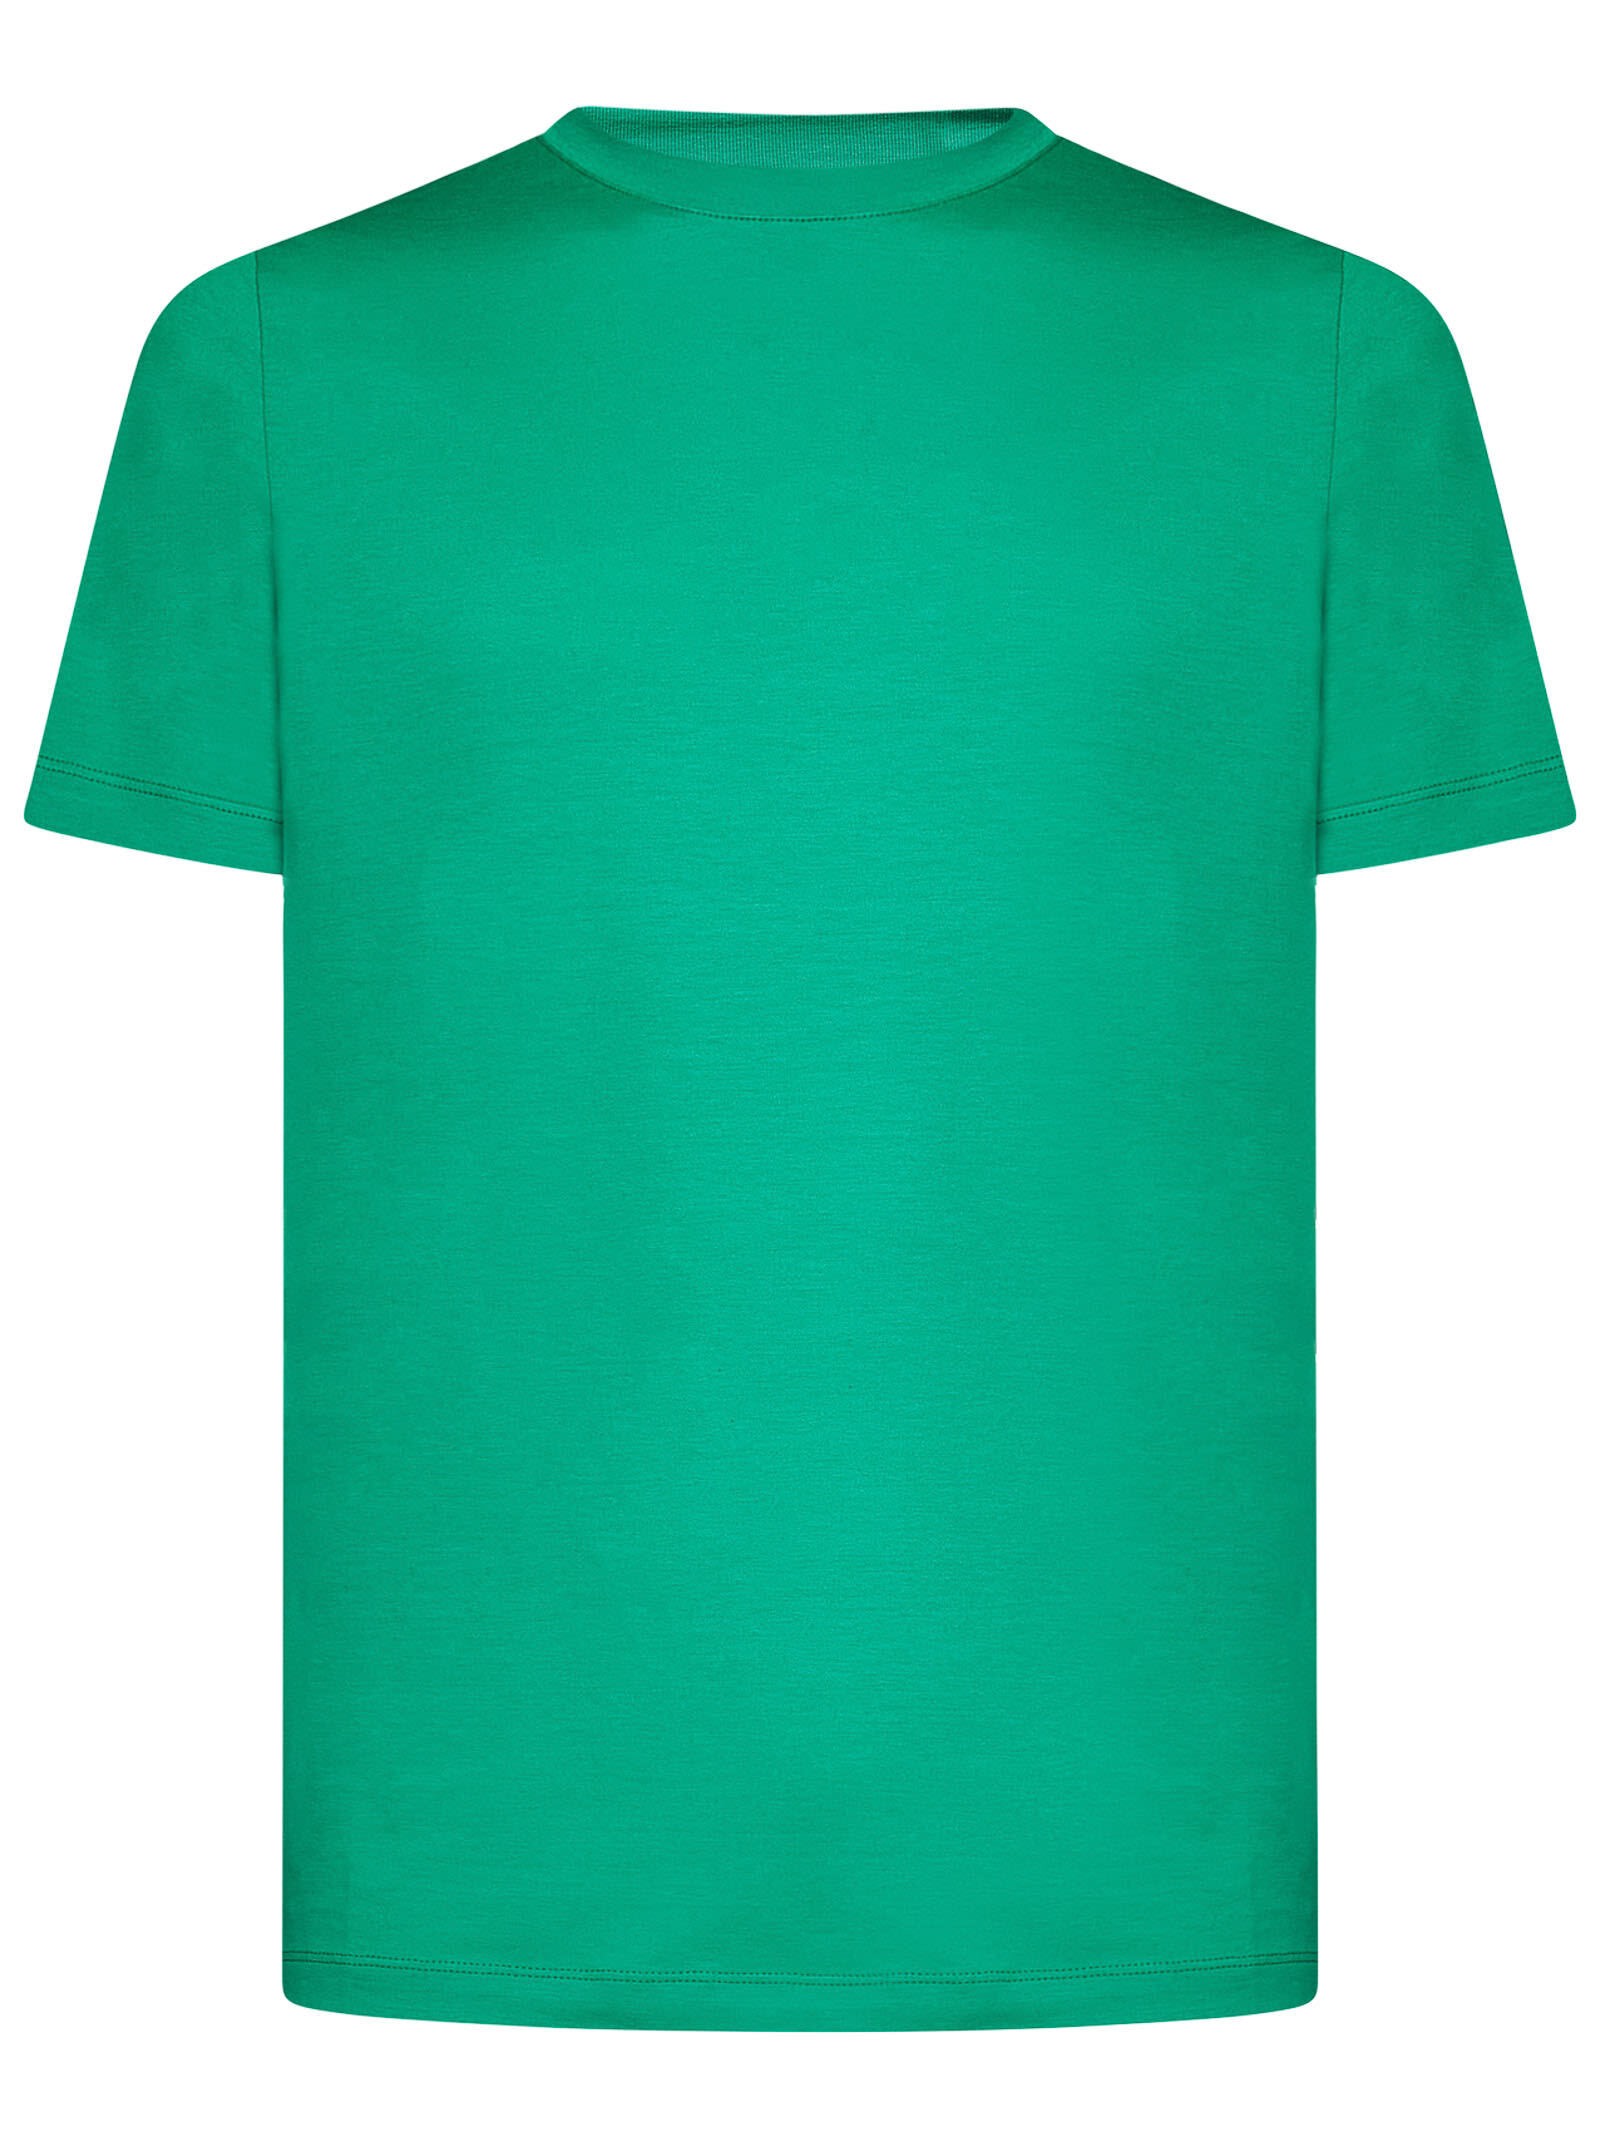 【お気にいる】 秋冬2023 グリーン E3351 MaLoupeUJA032J3U26 Tシャツ ia メンズ Tシャツ サイズ:56(IT)